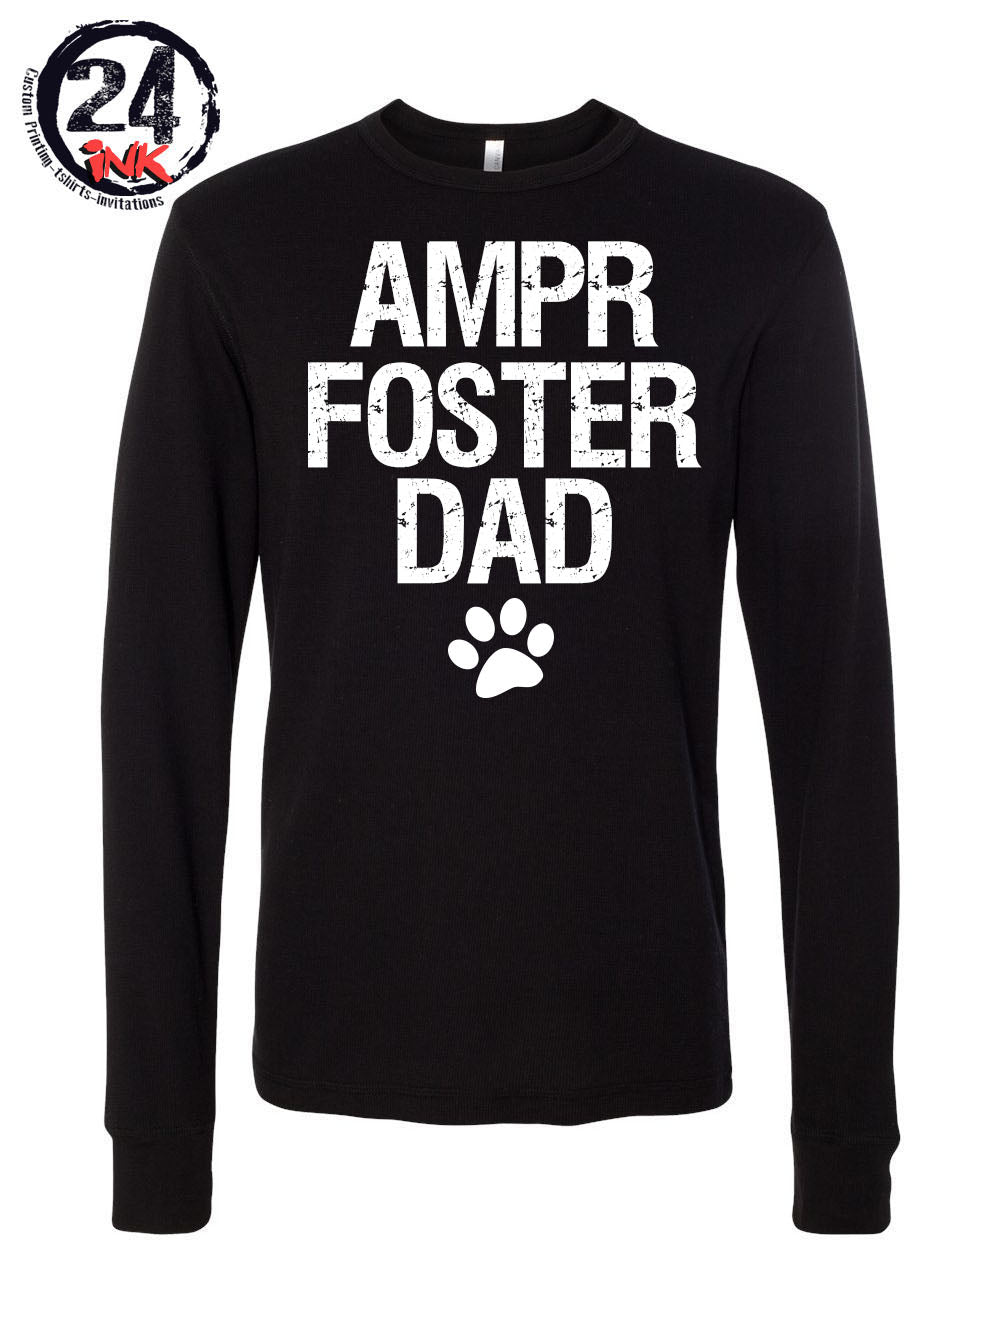 AMPR Foster Dad Long Sleeve Shirt